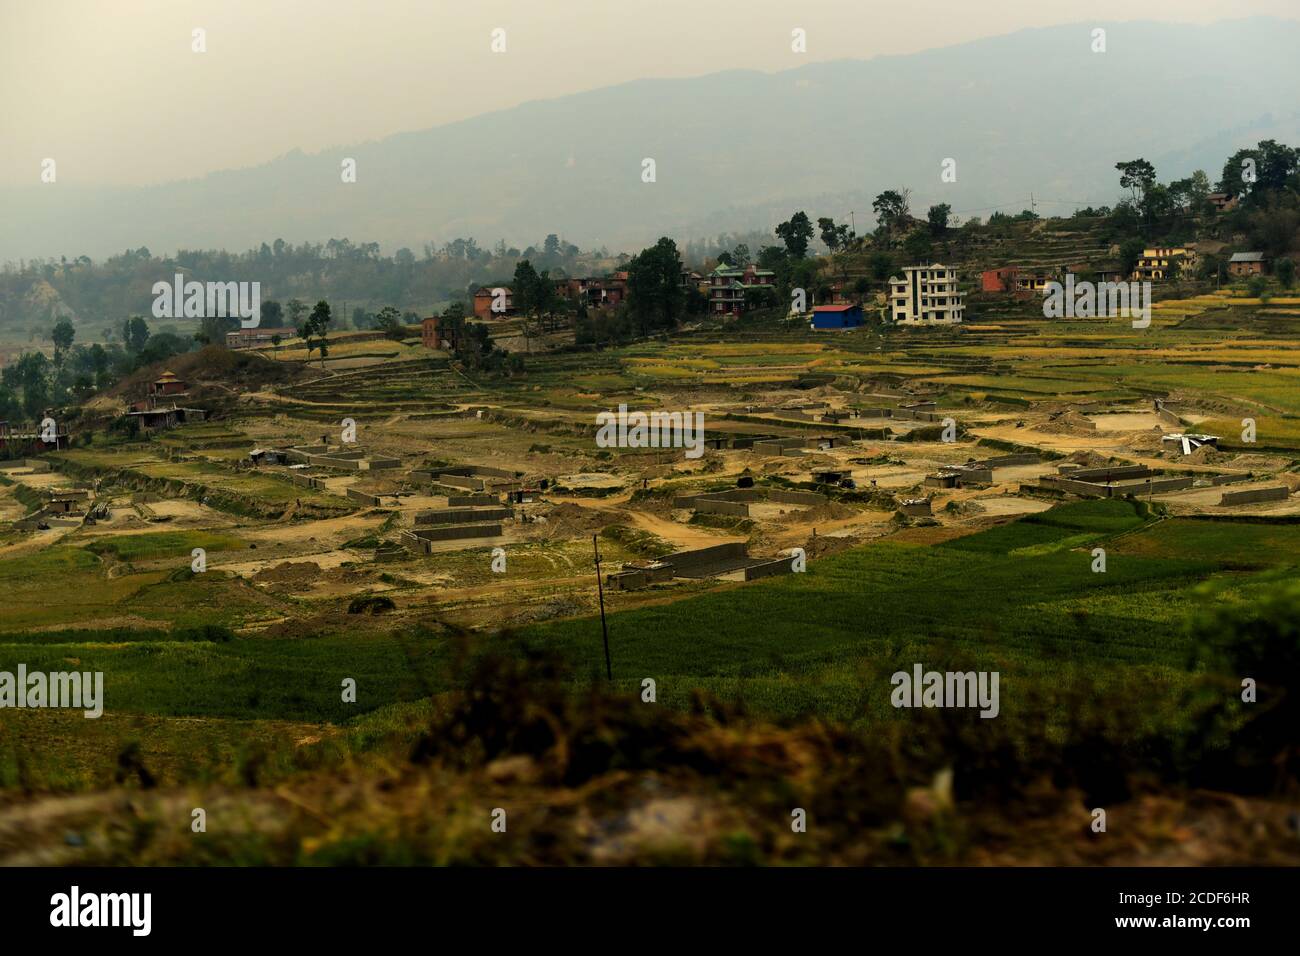 Conversion des champs agricoles en usine de matériaux de construction à la périphérie de Katmandou, au Népal. Banque D'Images